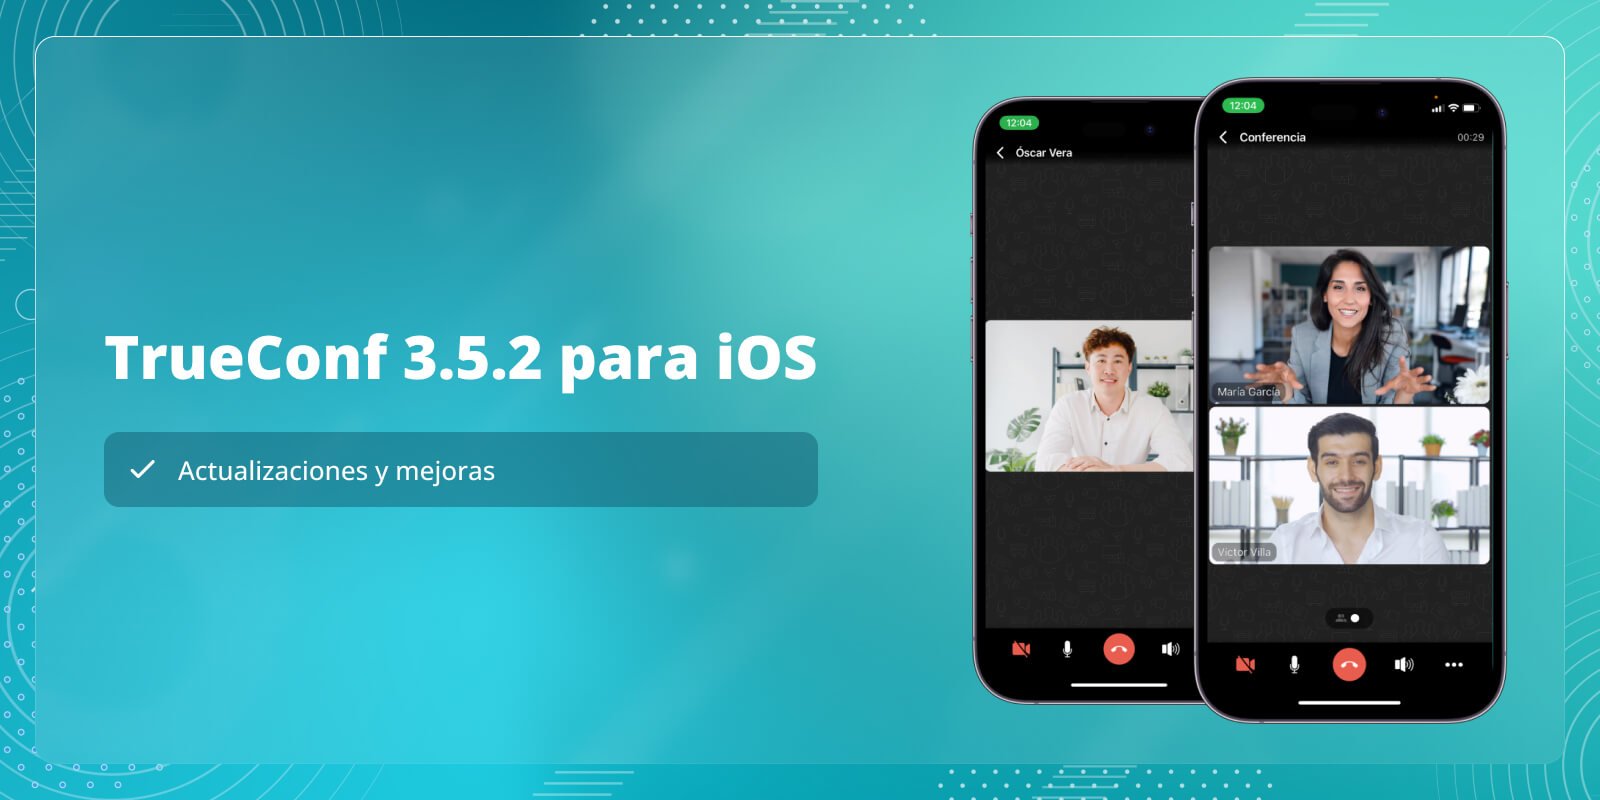 TrueConf 3.5.2 para iOS: actualizaciones y mejoras 7